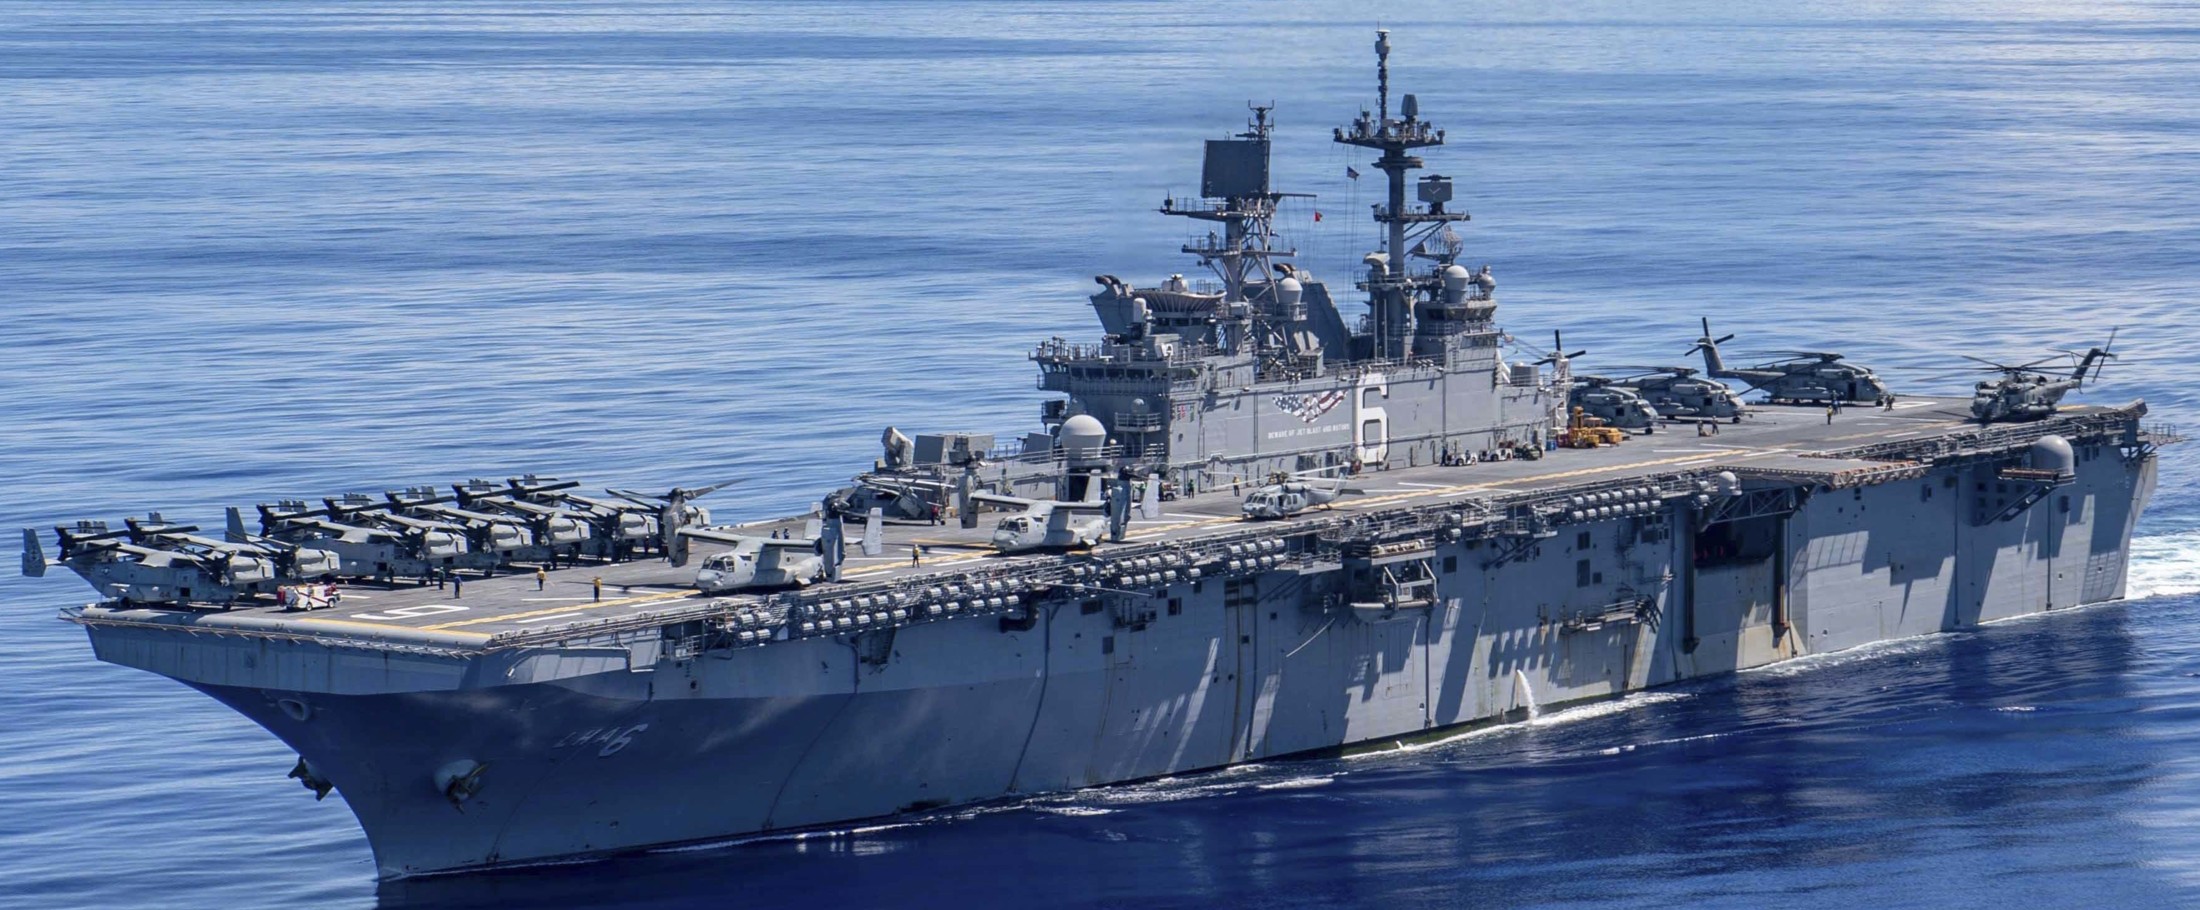 lha-6 uss america amphibious assault ship landing us navy marines vmm-262 valiant shield 183